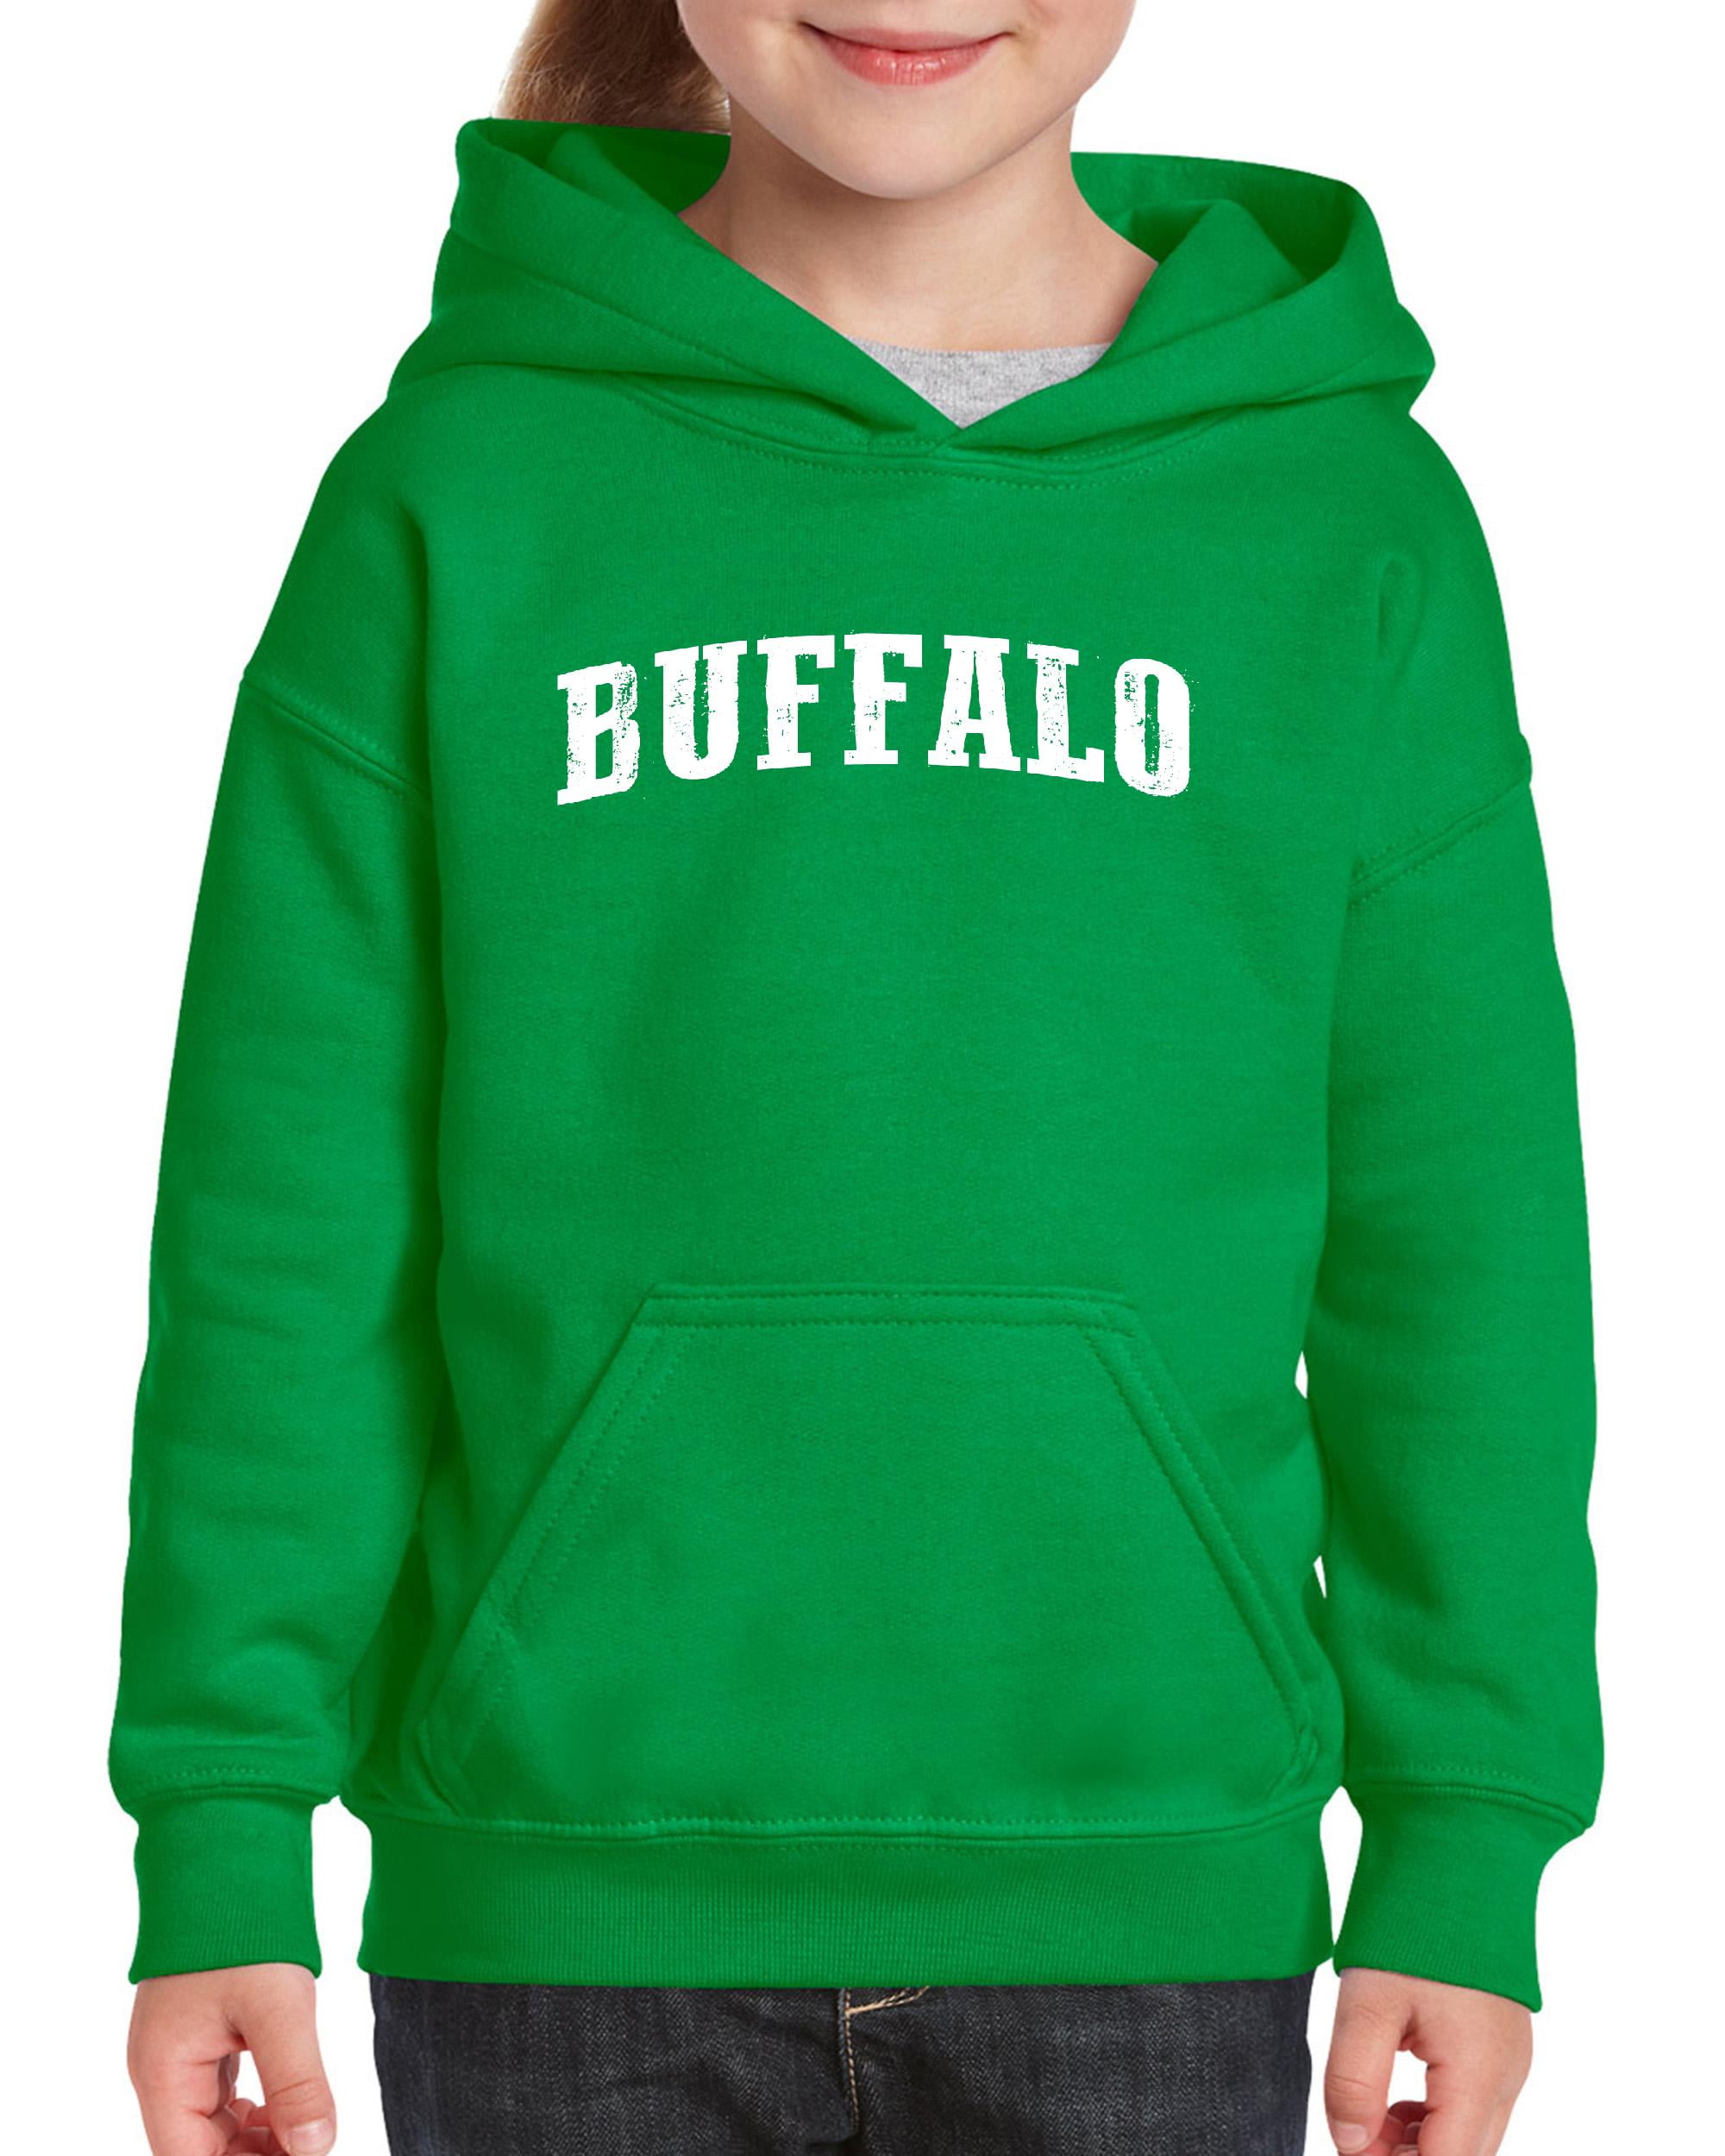 IWPF - Big Boys Hoodies and Sweatshirts - Buffalo - Walmart.com